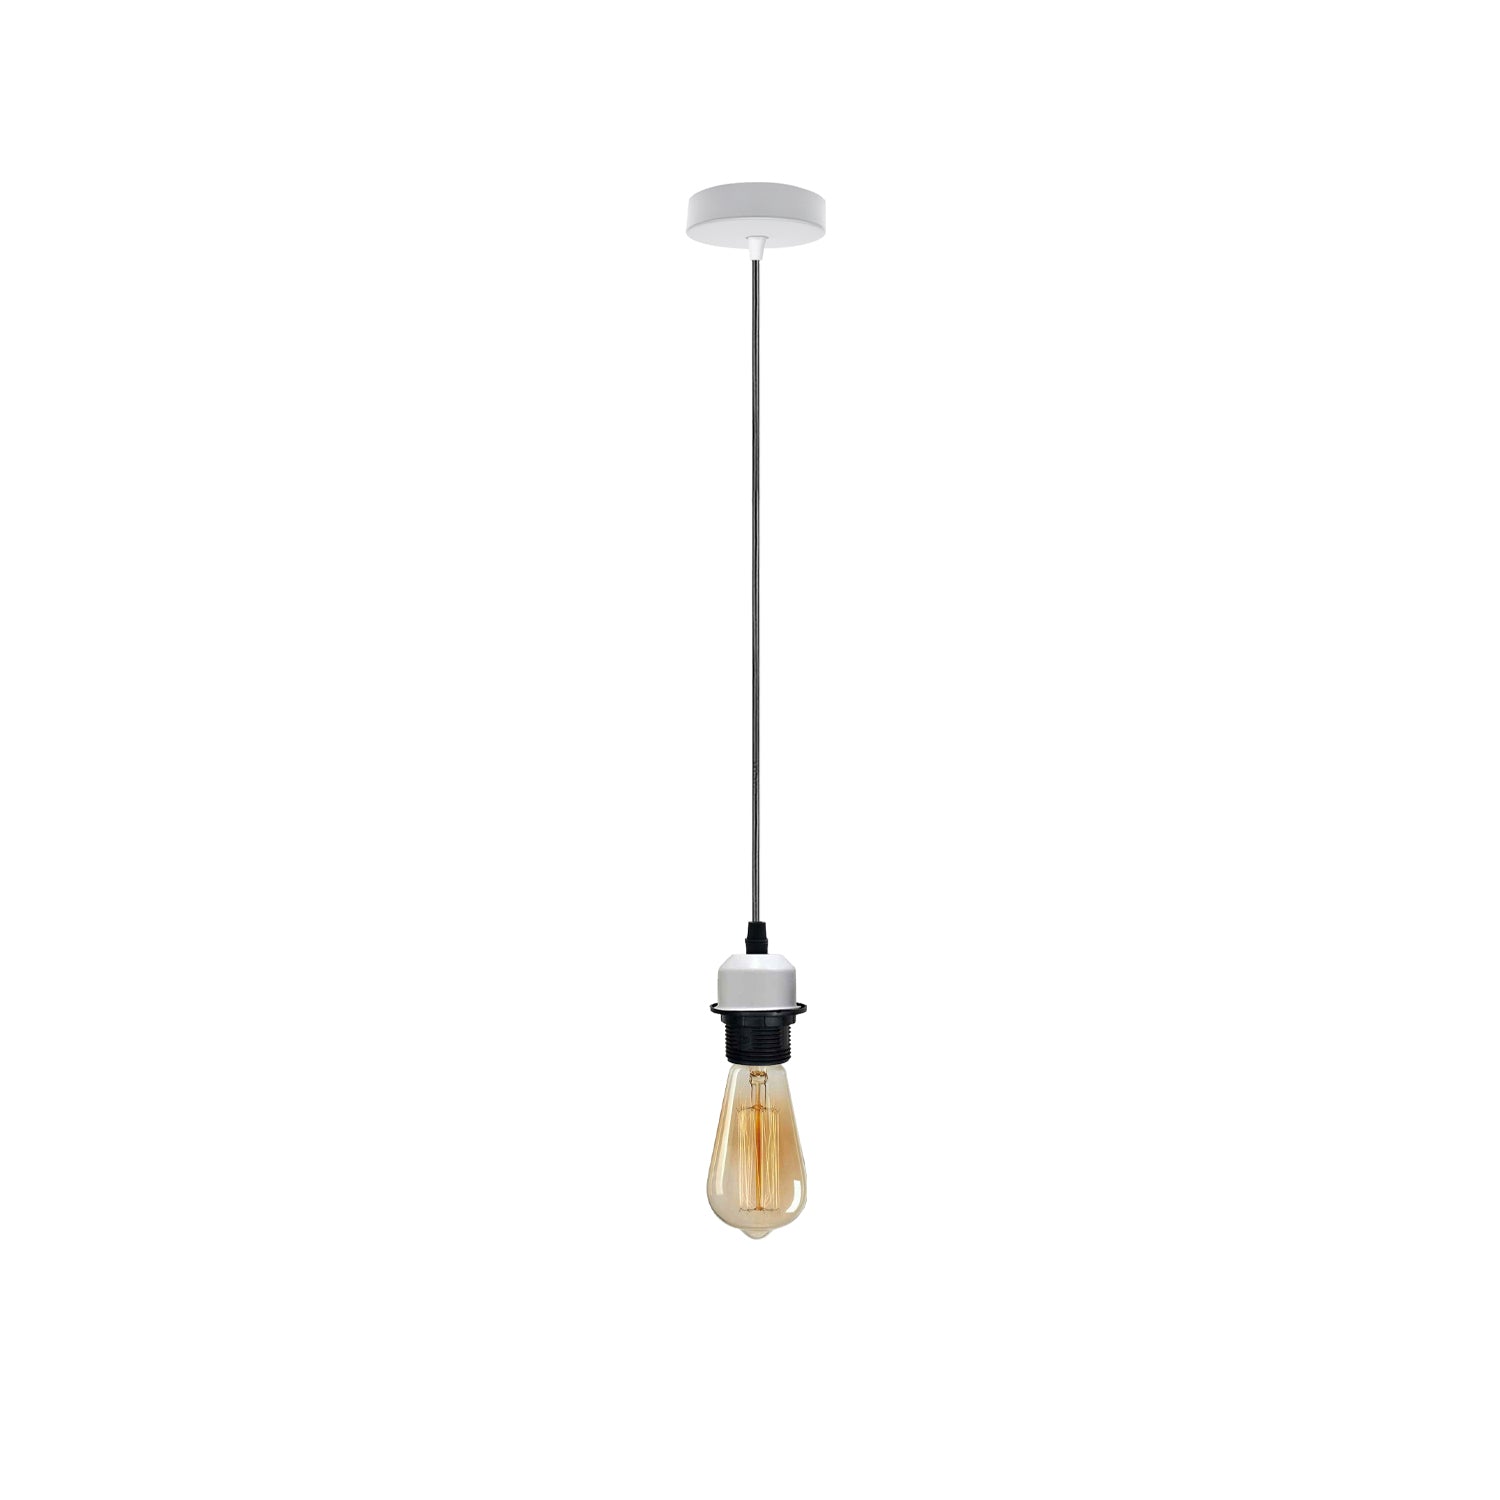 White Pendant Light,Lamp Holder Ceiling Hanging Light,E27 UK Holder PVC Cable ~4205